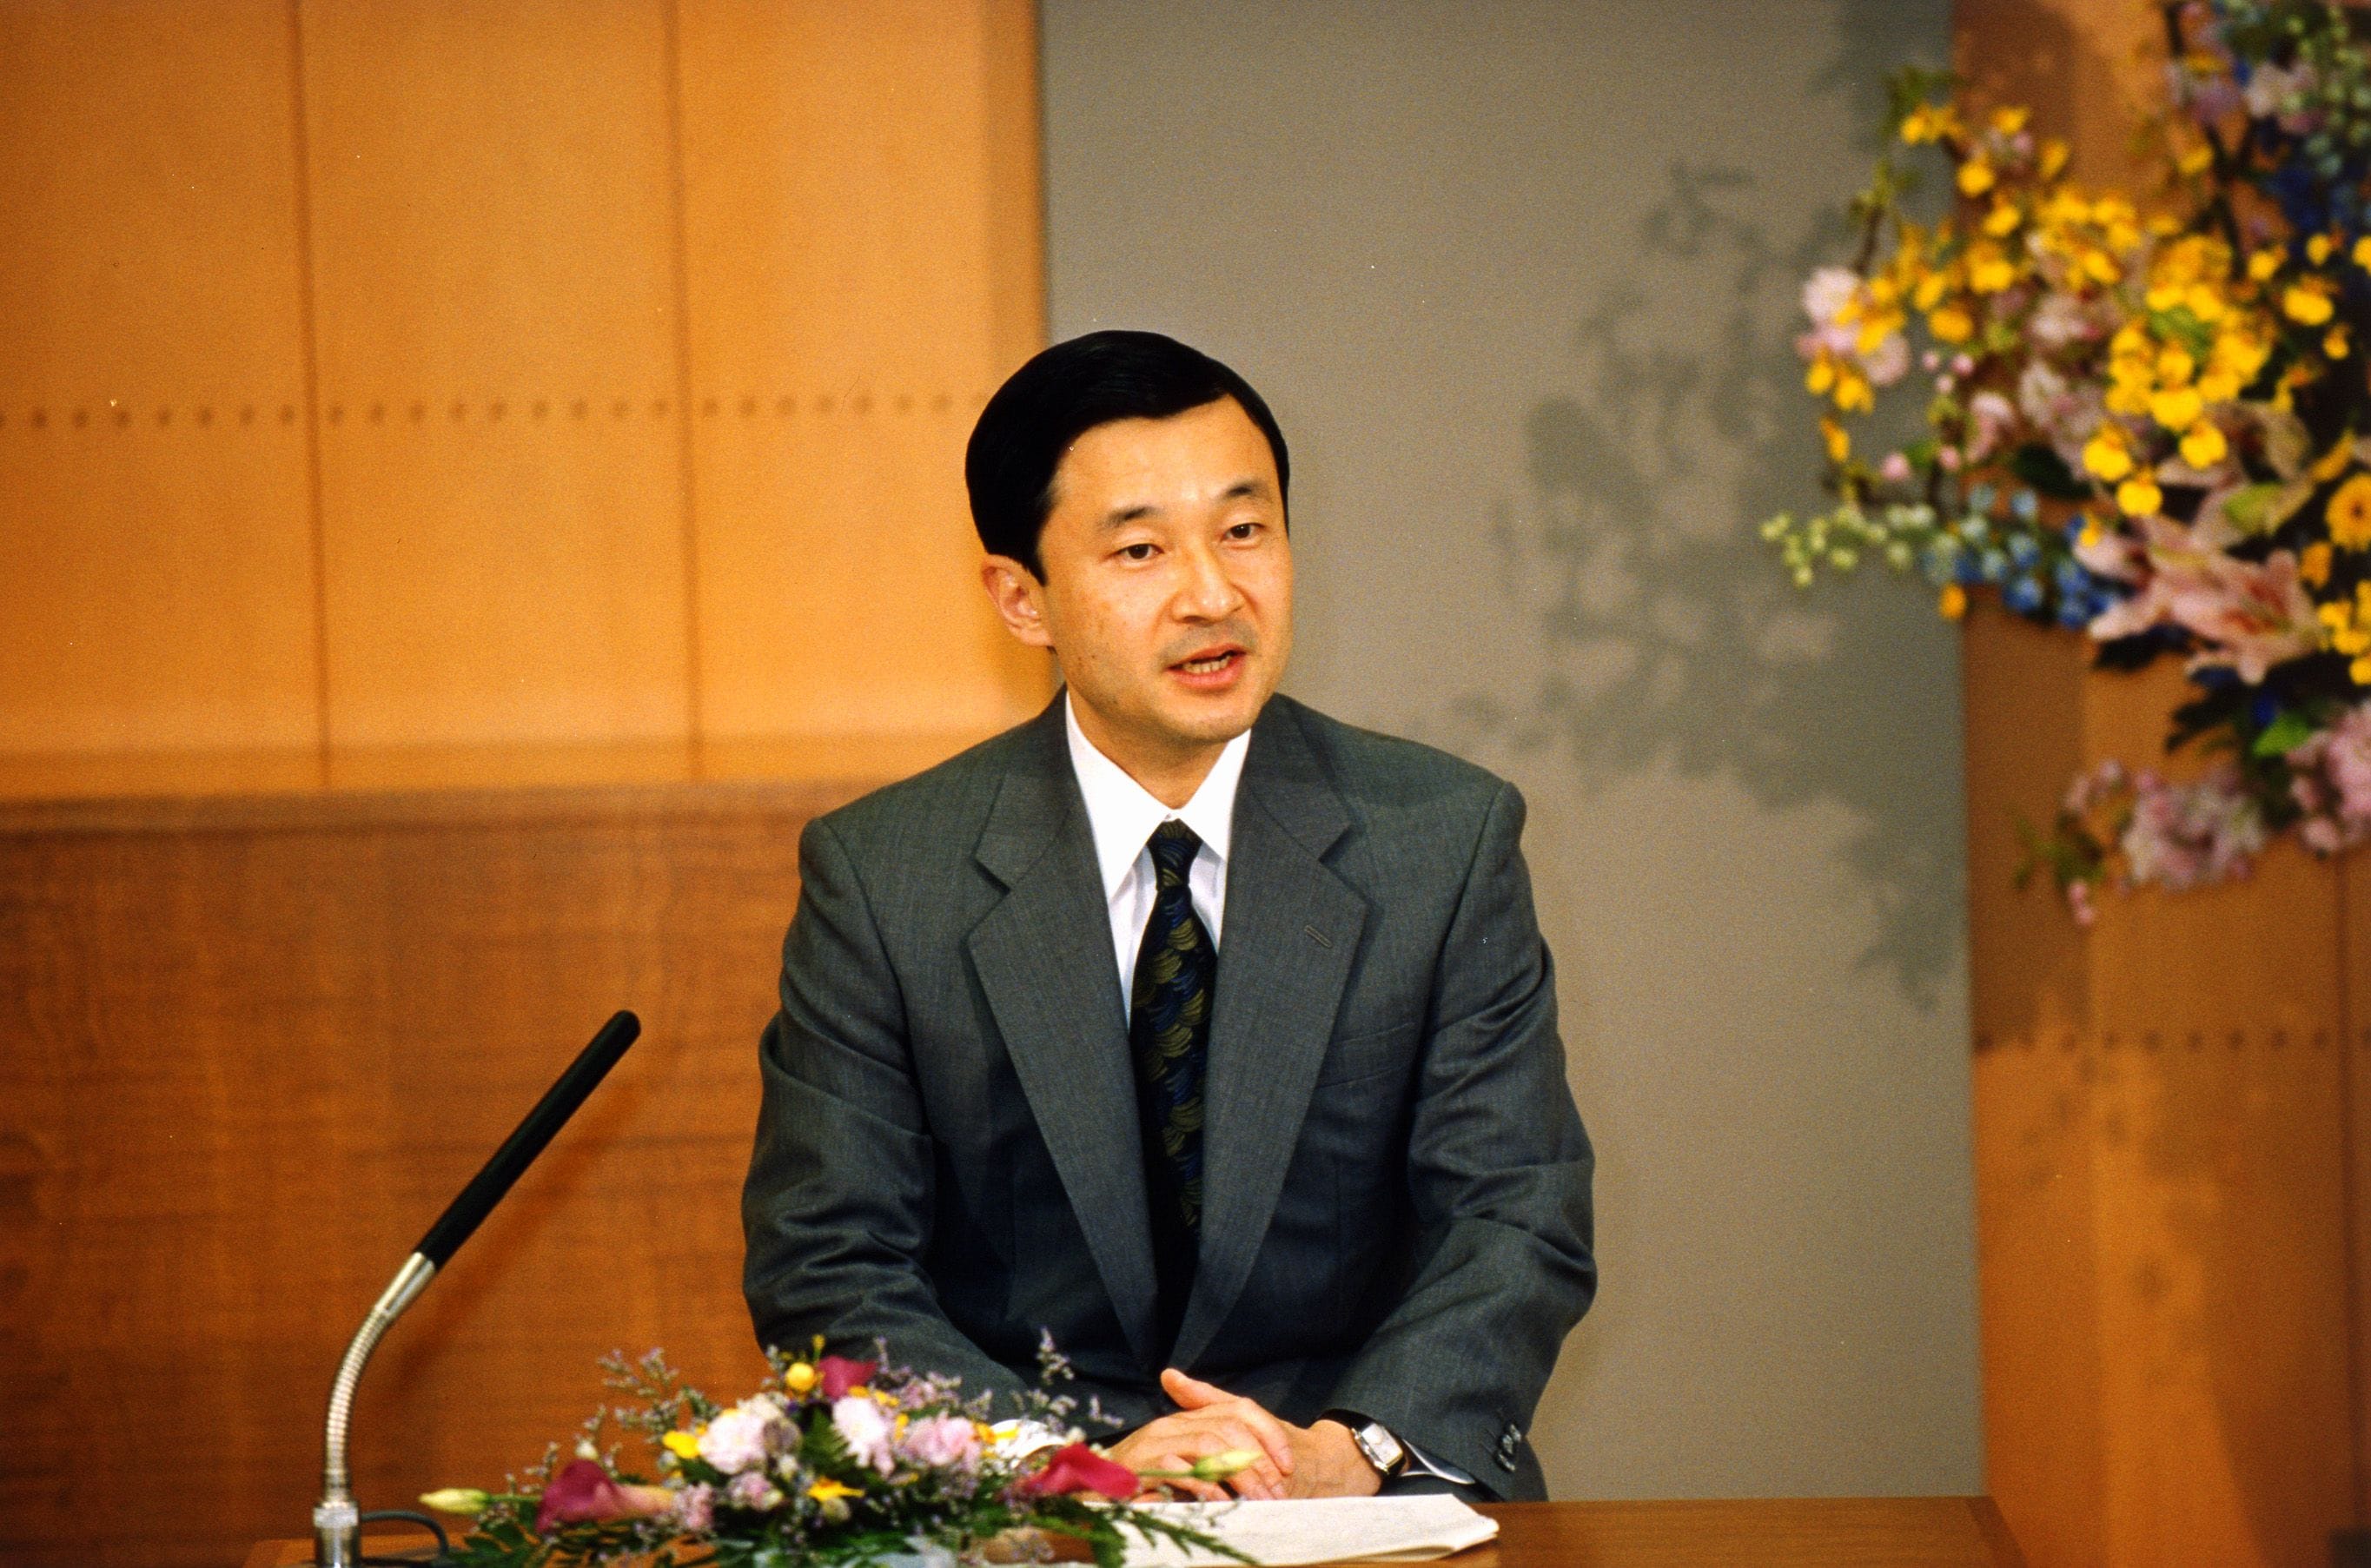 2004年5月10日、雅子さまの人格が否定されてきたと発言された　ⒸJMPA